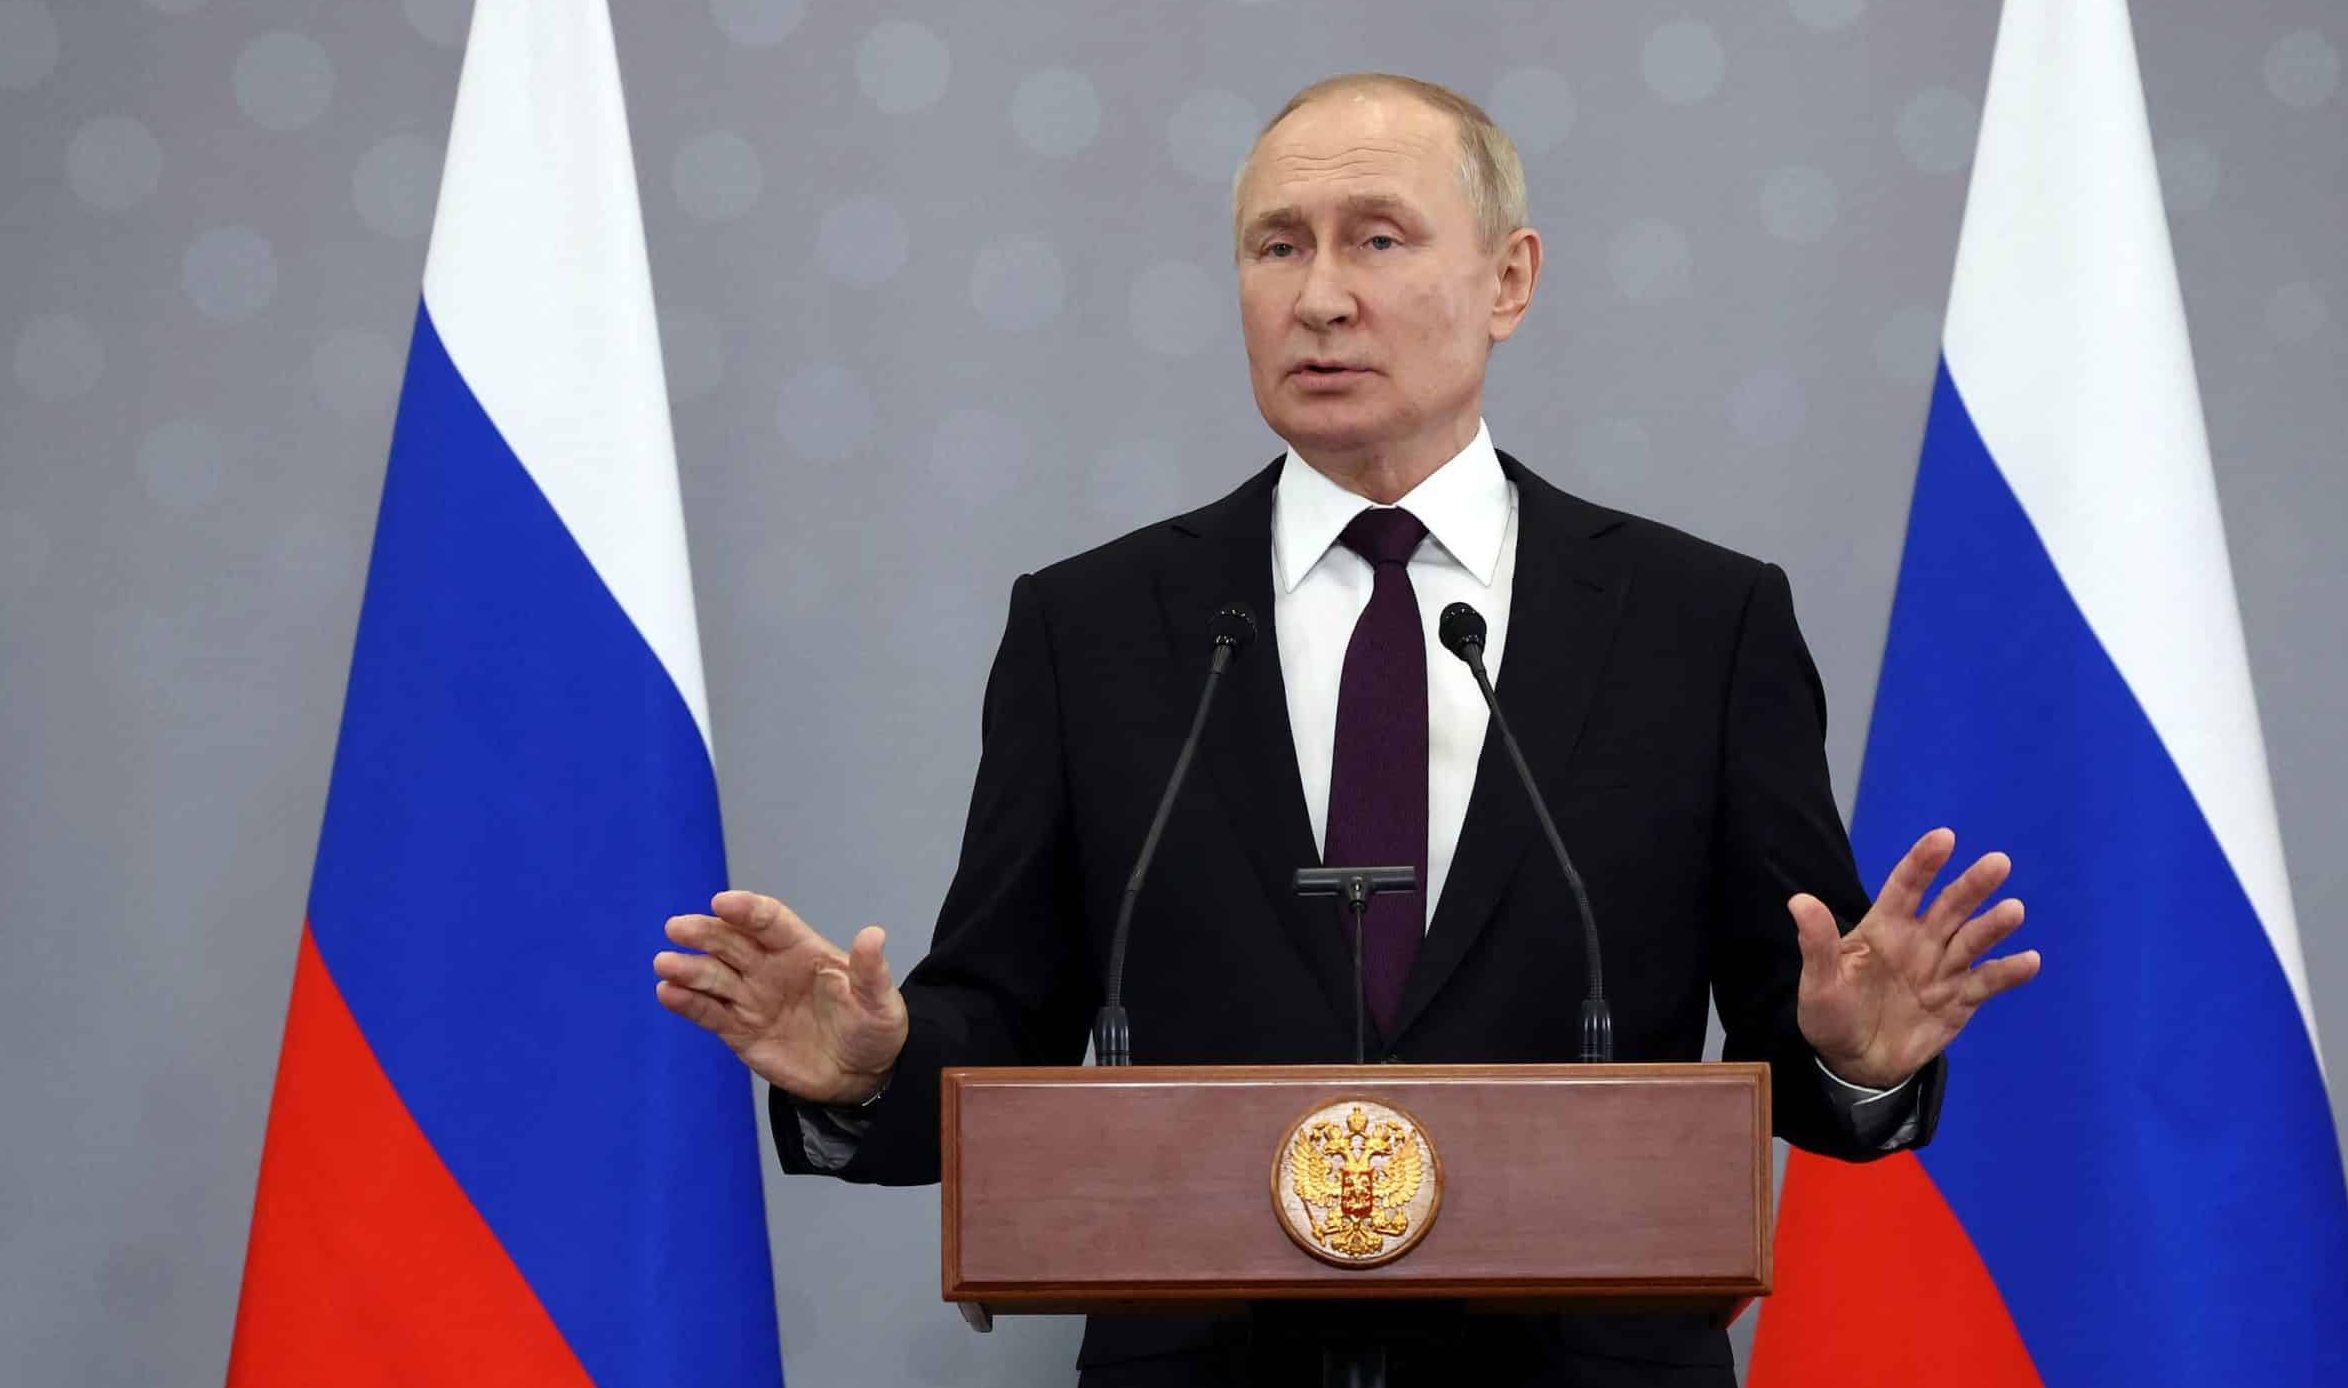 Putin grano Kiev parte all’attacco contro la flotta russa in Crimea. Mosca accusa Londra di aver partecipato al colpo e di aver sabotato il Nord Stream.